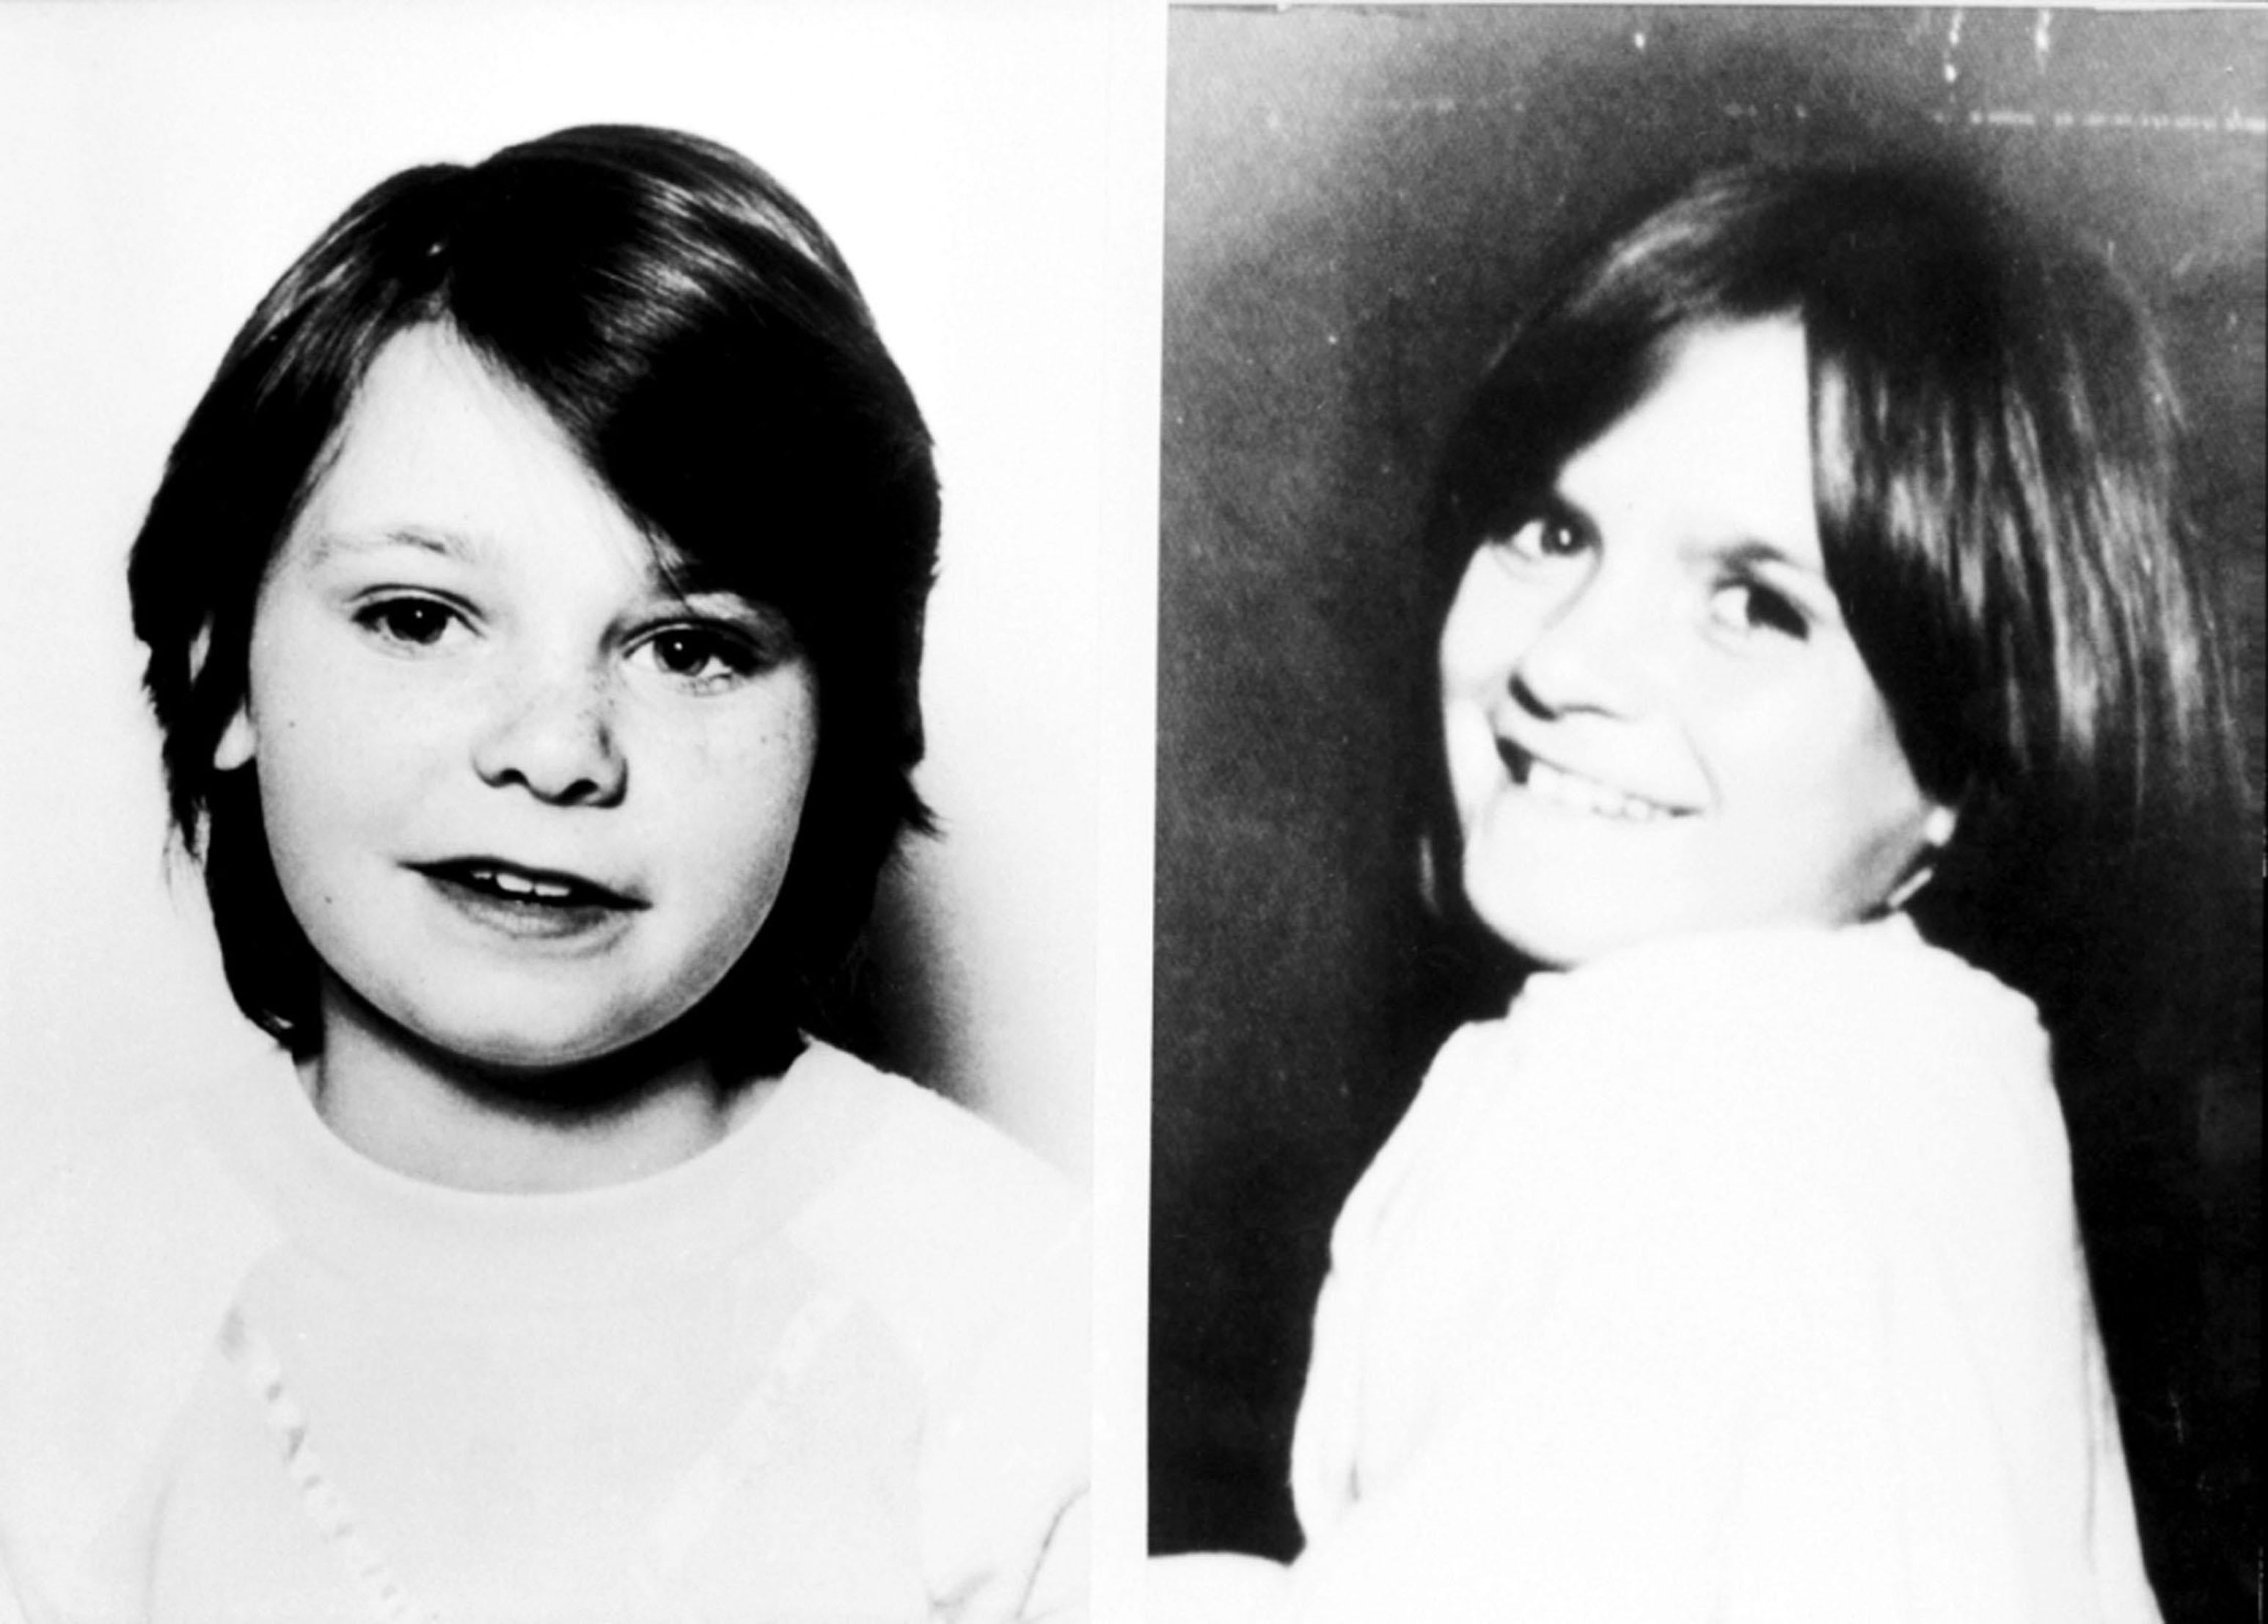 Schoolgirls Karen Hadaway and Nicola Fellows were murdered by paedophile Russell Bishop in Brighton in 1986 (PA)